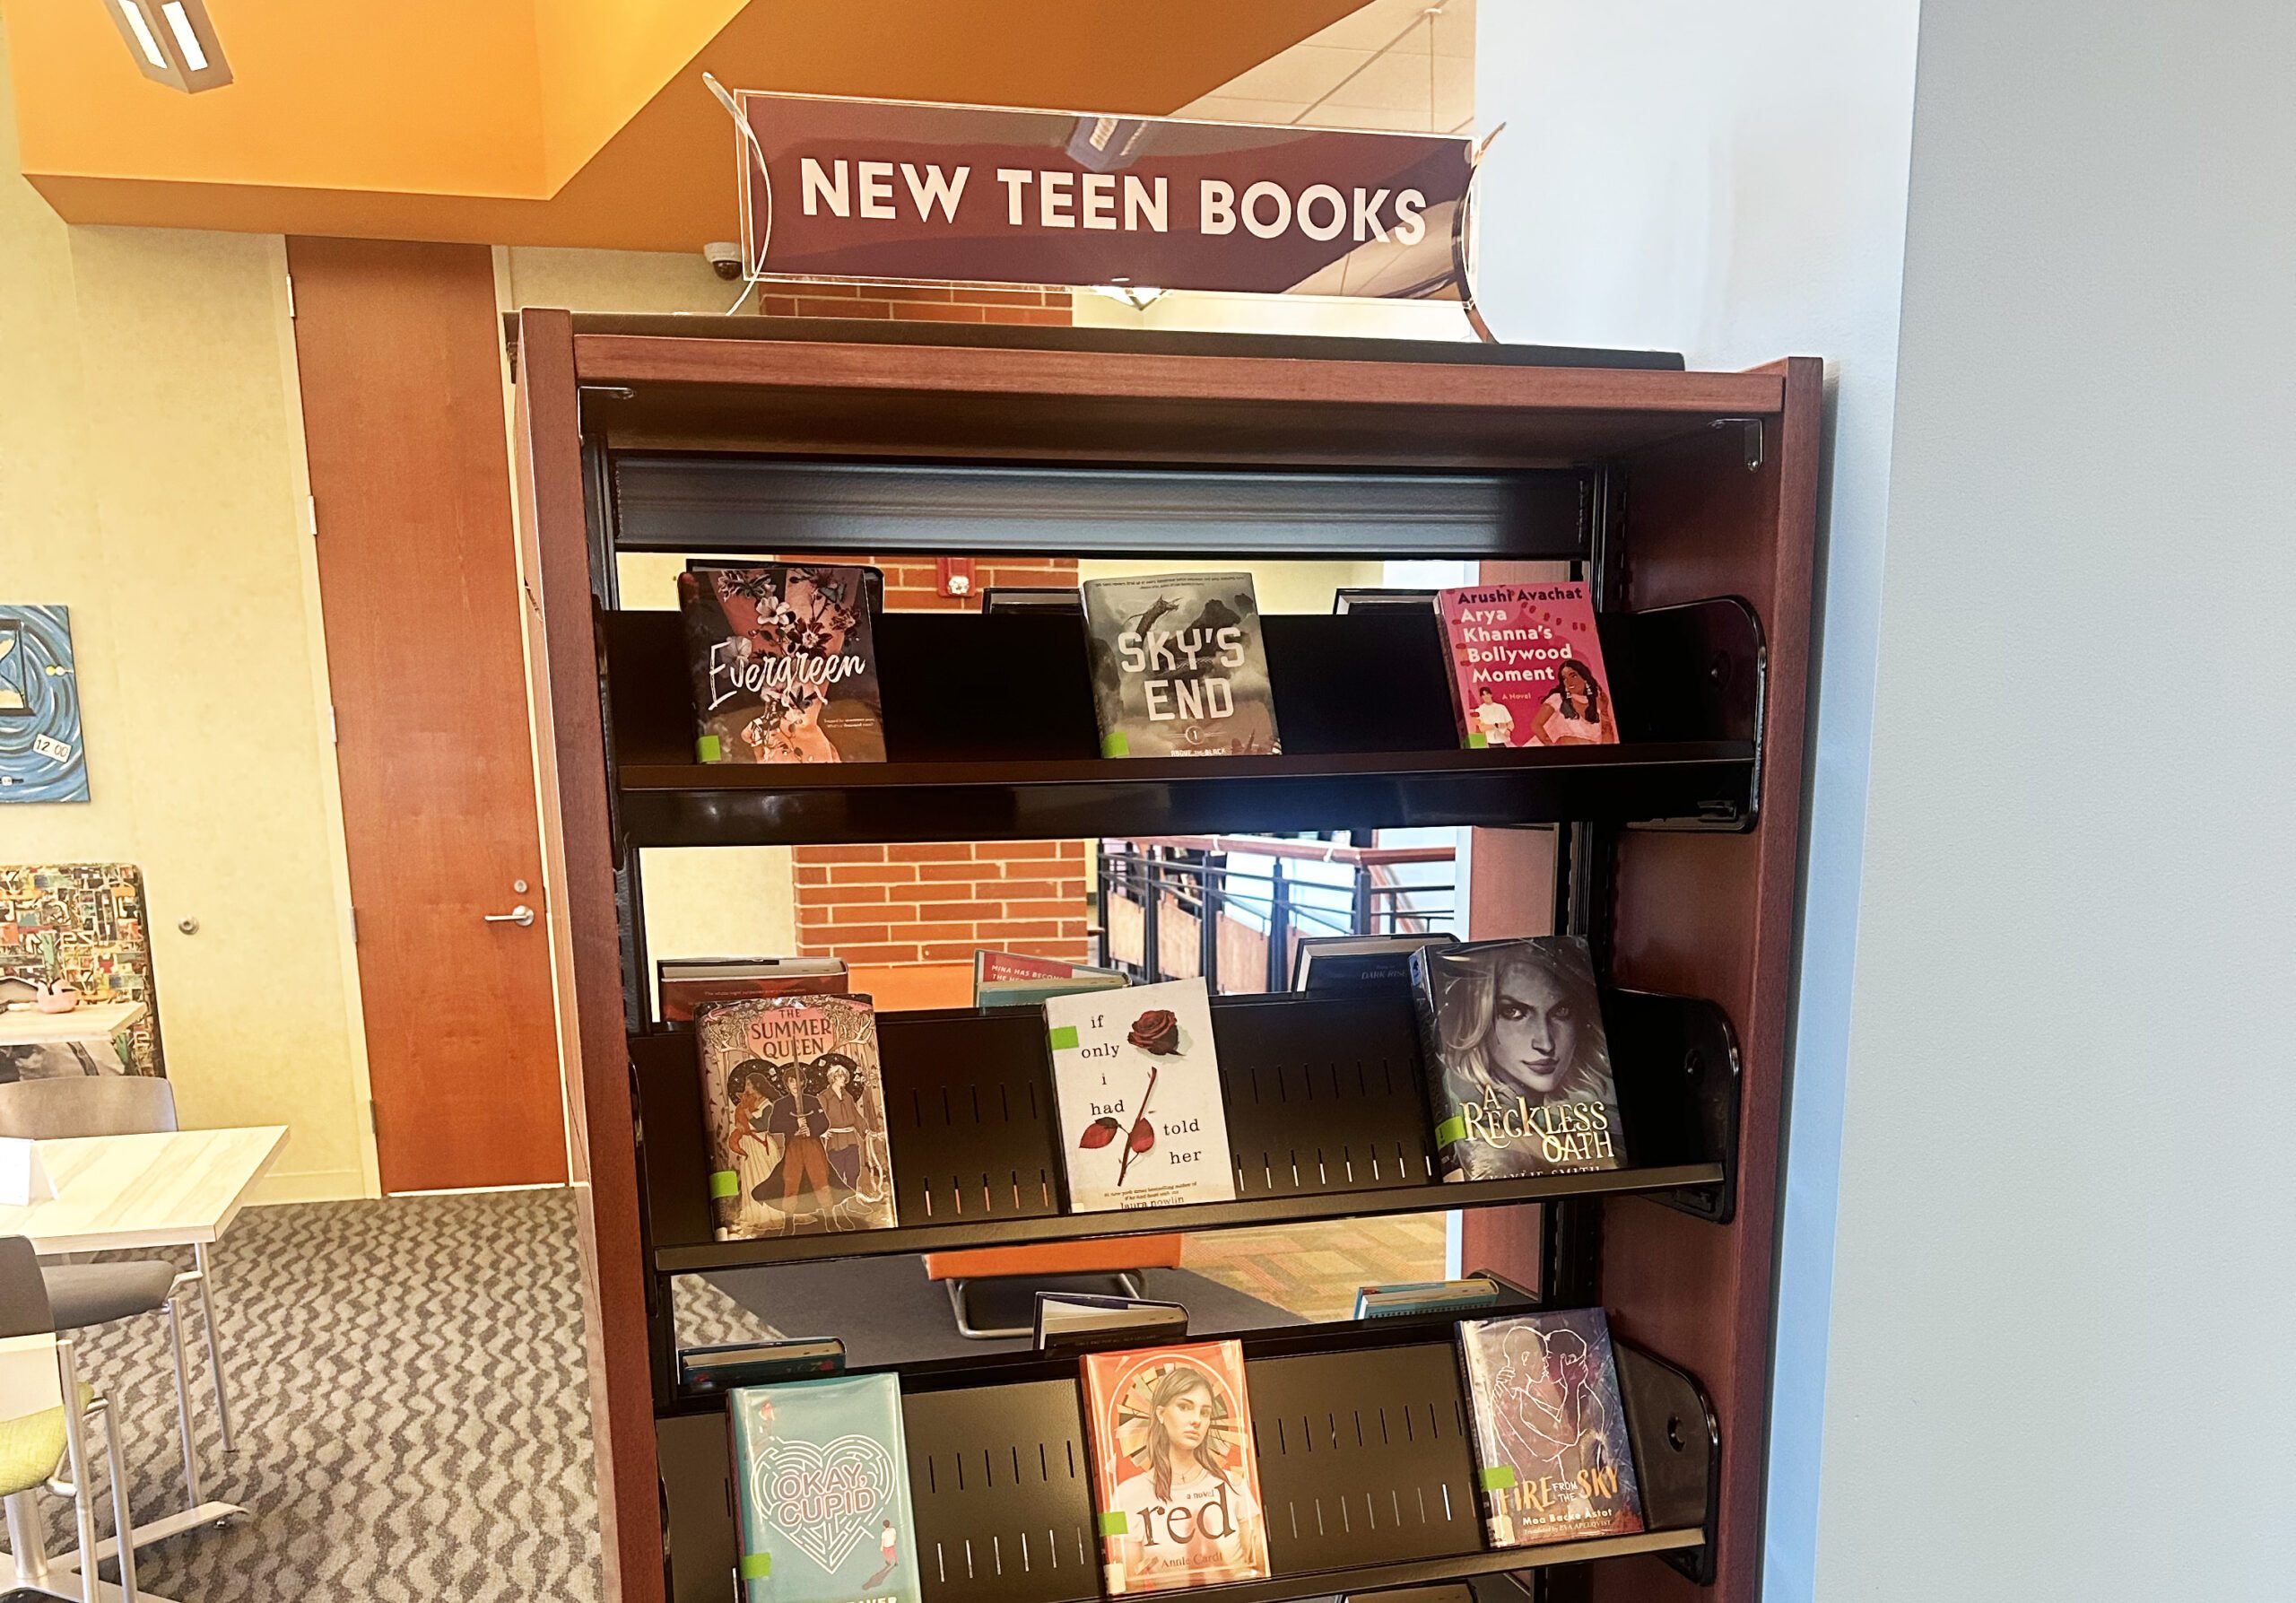 New Teen Book shelves